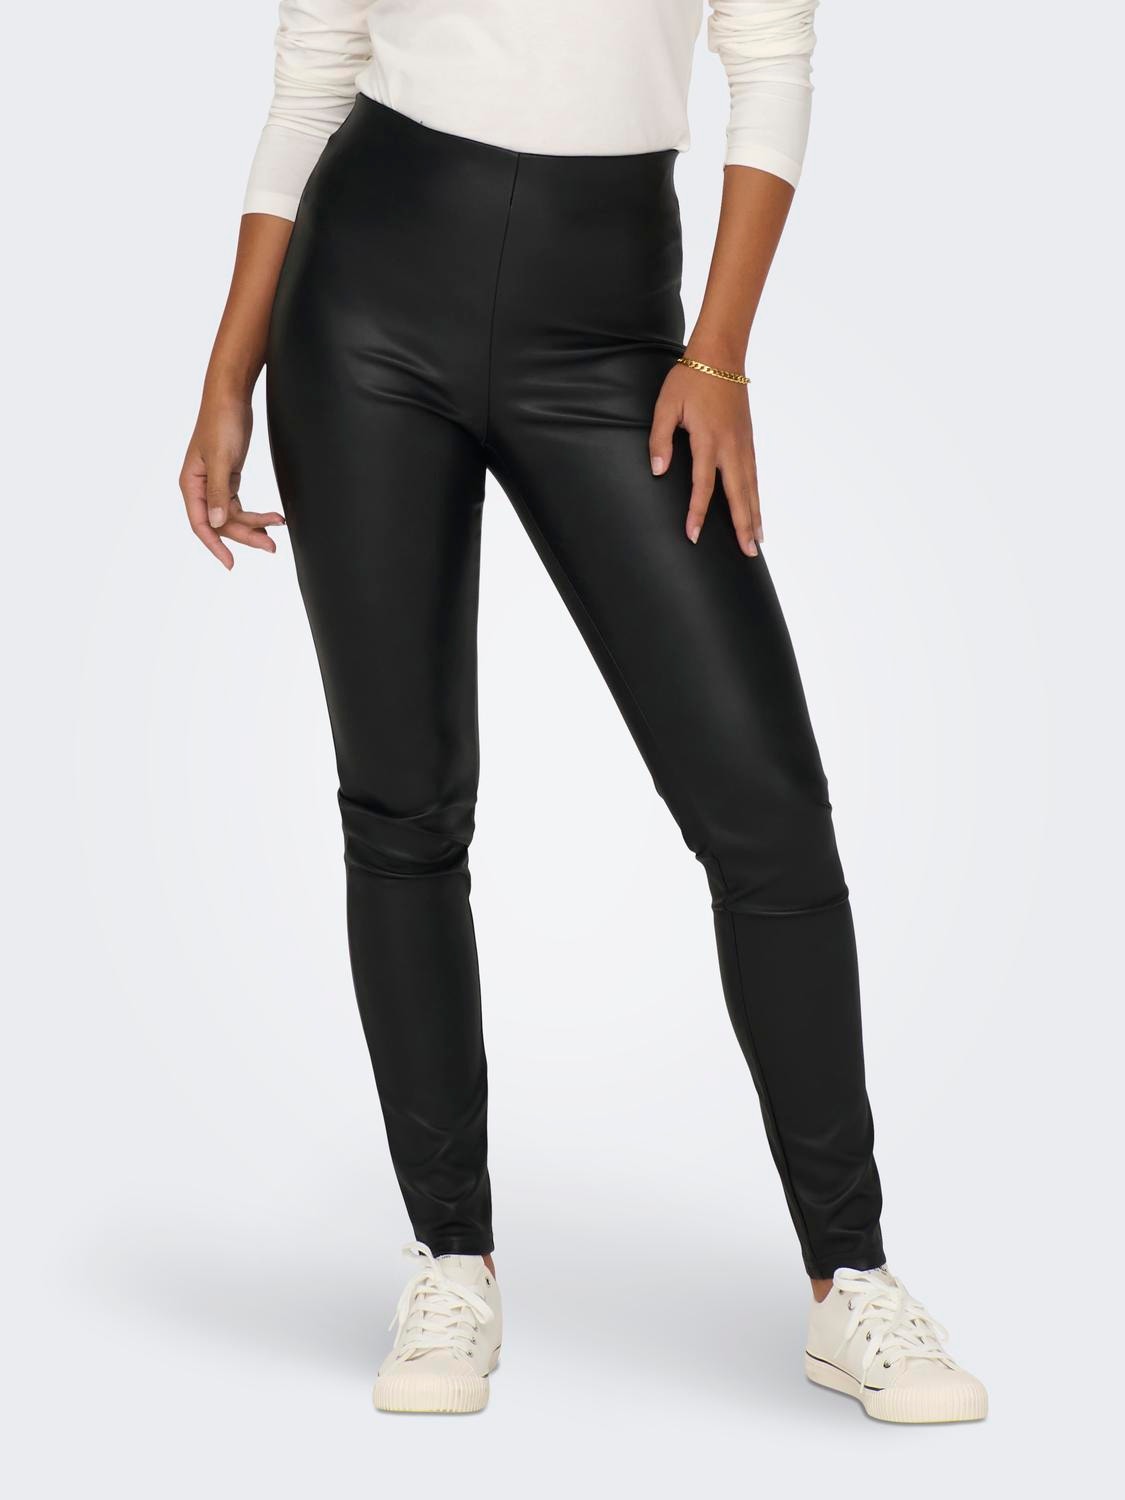 ONLY Leggings Tight Fit Taille haute Bas ajustés -Black - 15300607